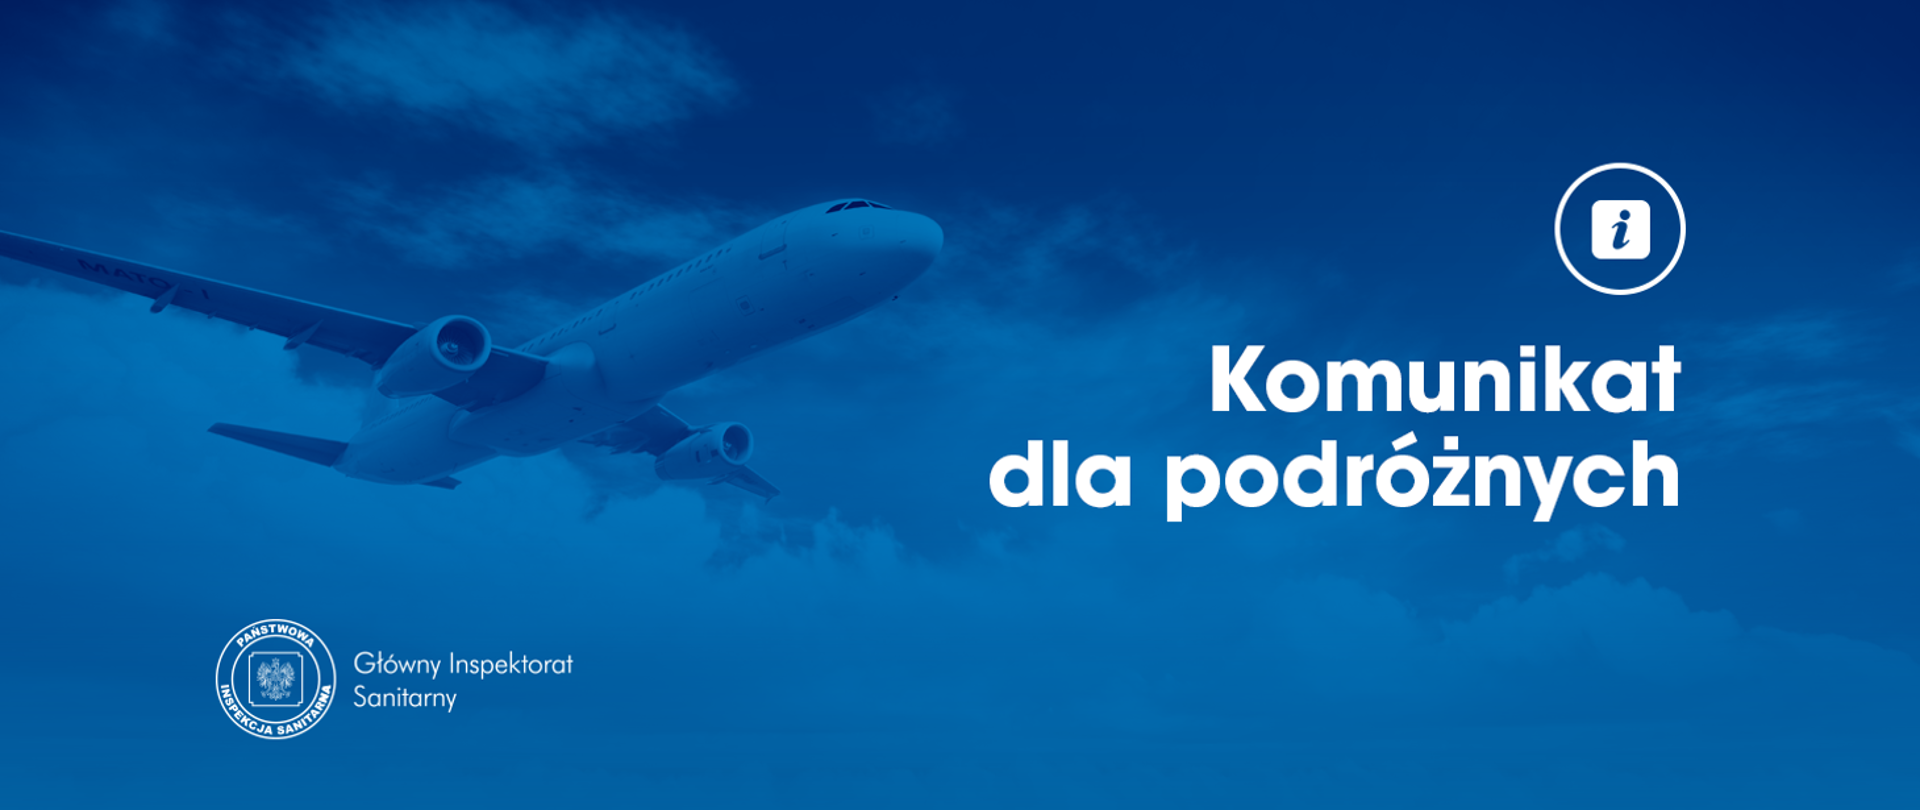 Samolot na niebieskim tle i biały napis "Komunikat dla podróżnych" logo PIS